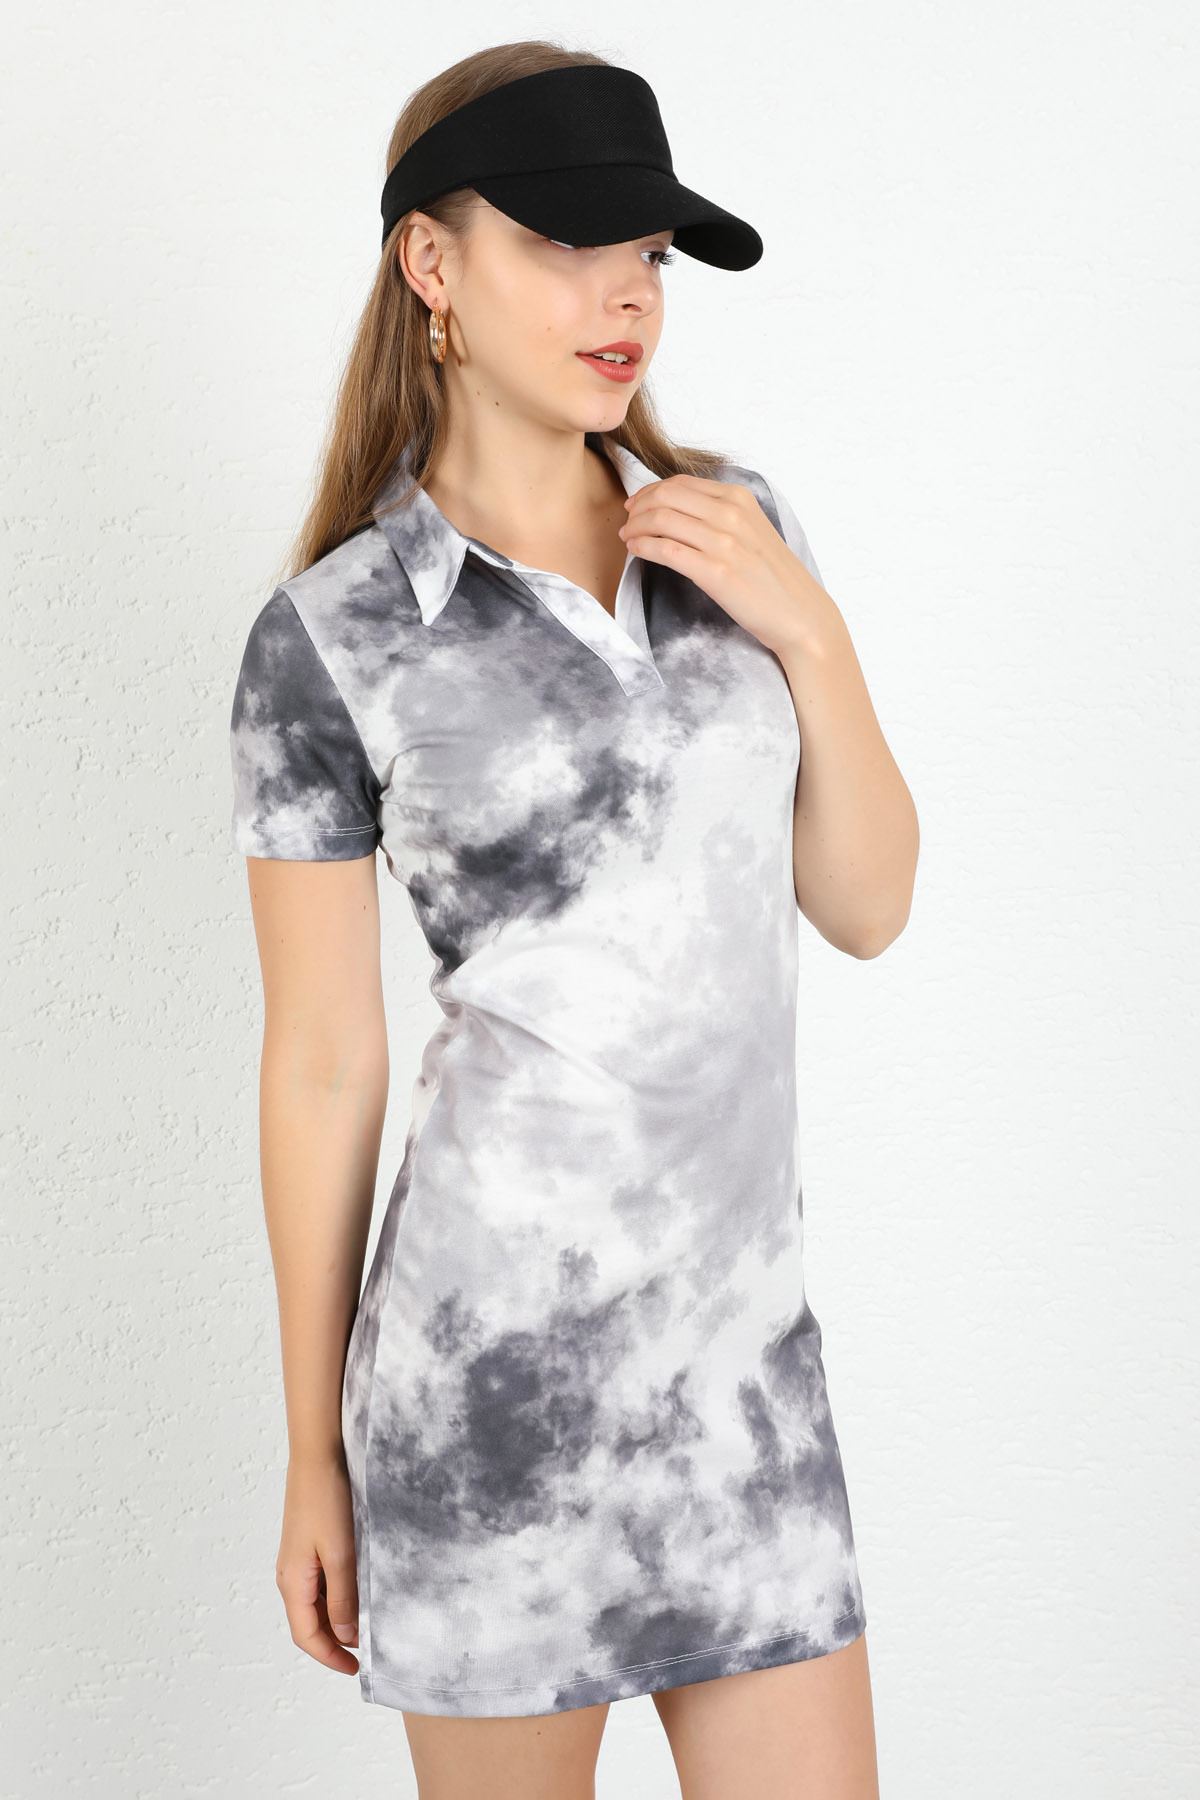 فستان نسائي قماش اطلس 3/4 الحجم كلاسيك - اسود